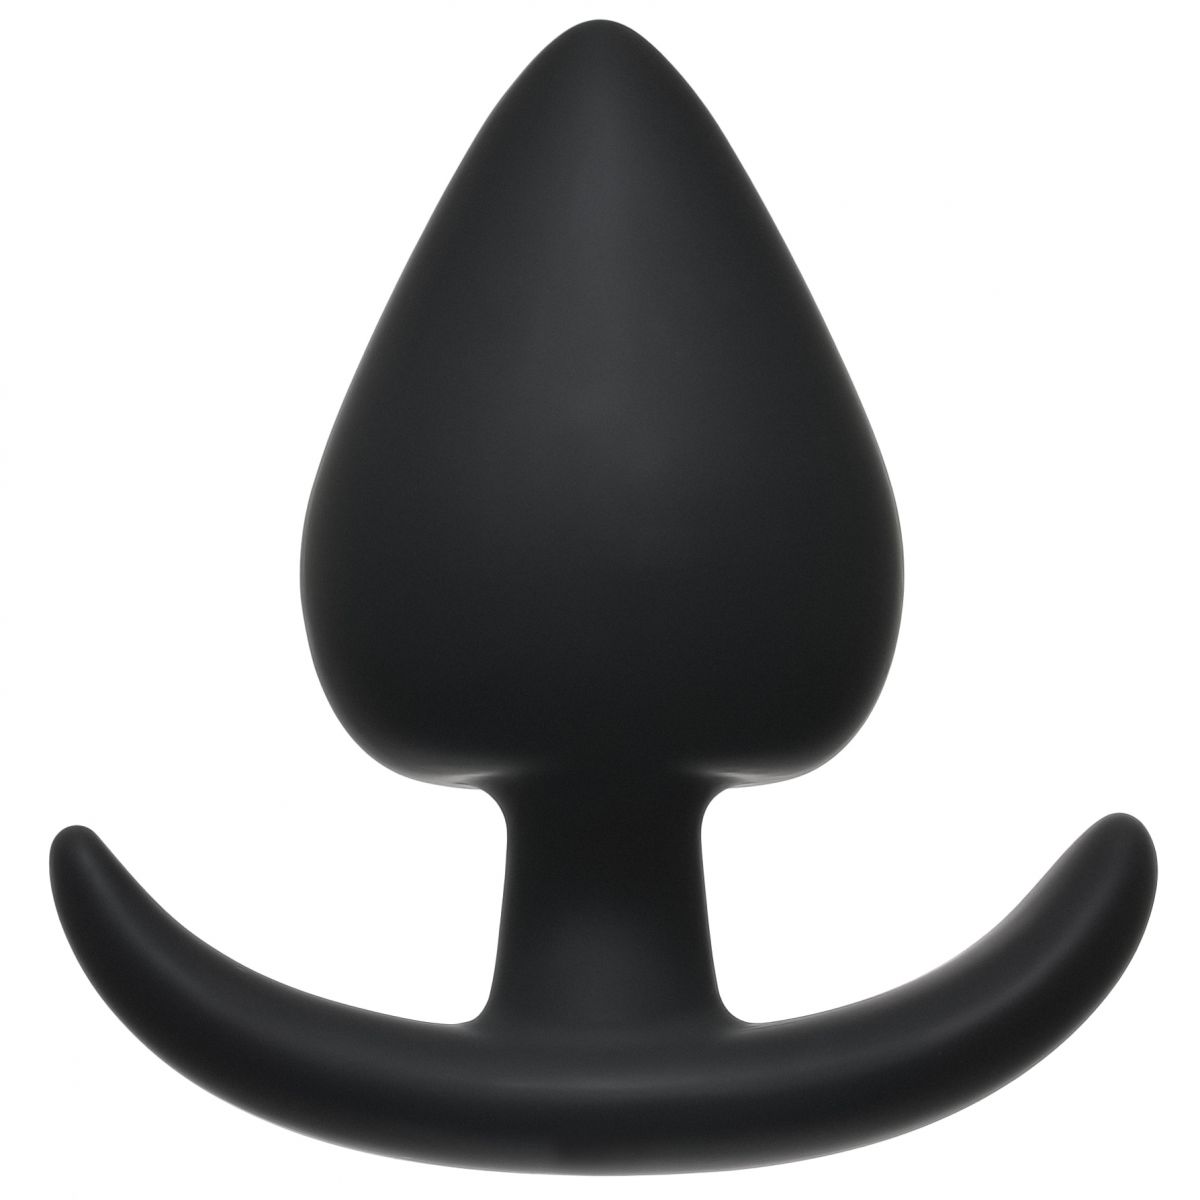 Чёрная анальная пробка Perfect Fit Plug Medium - 9 см. от Lola toys